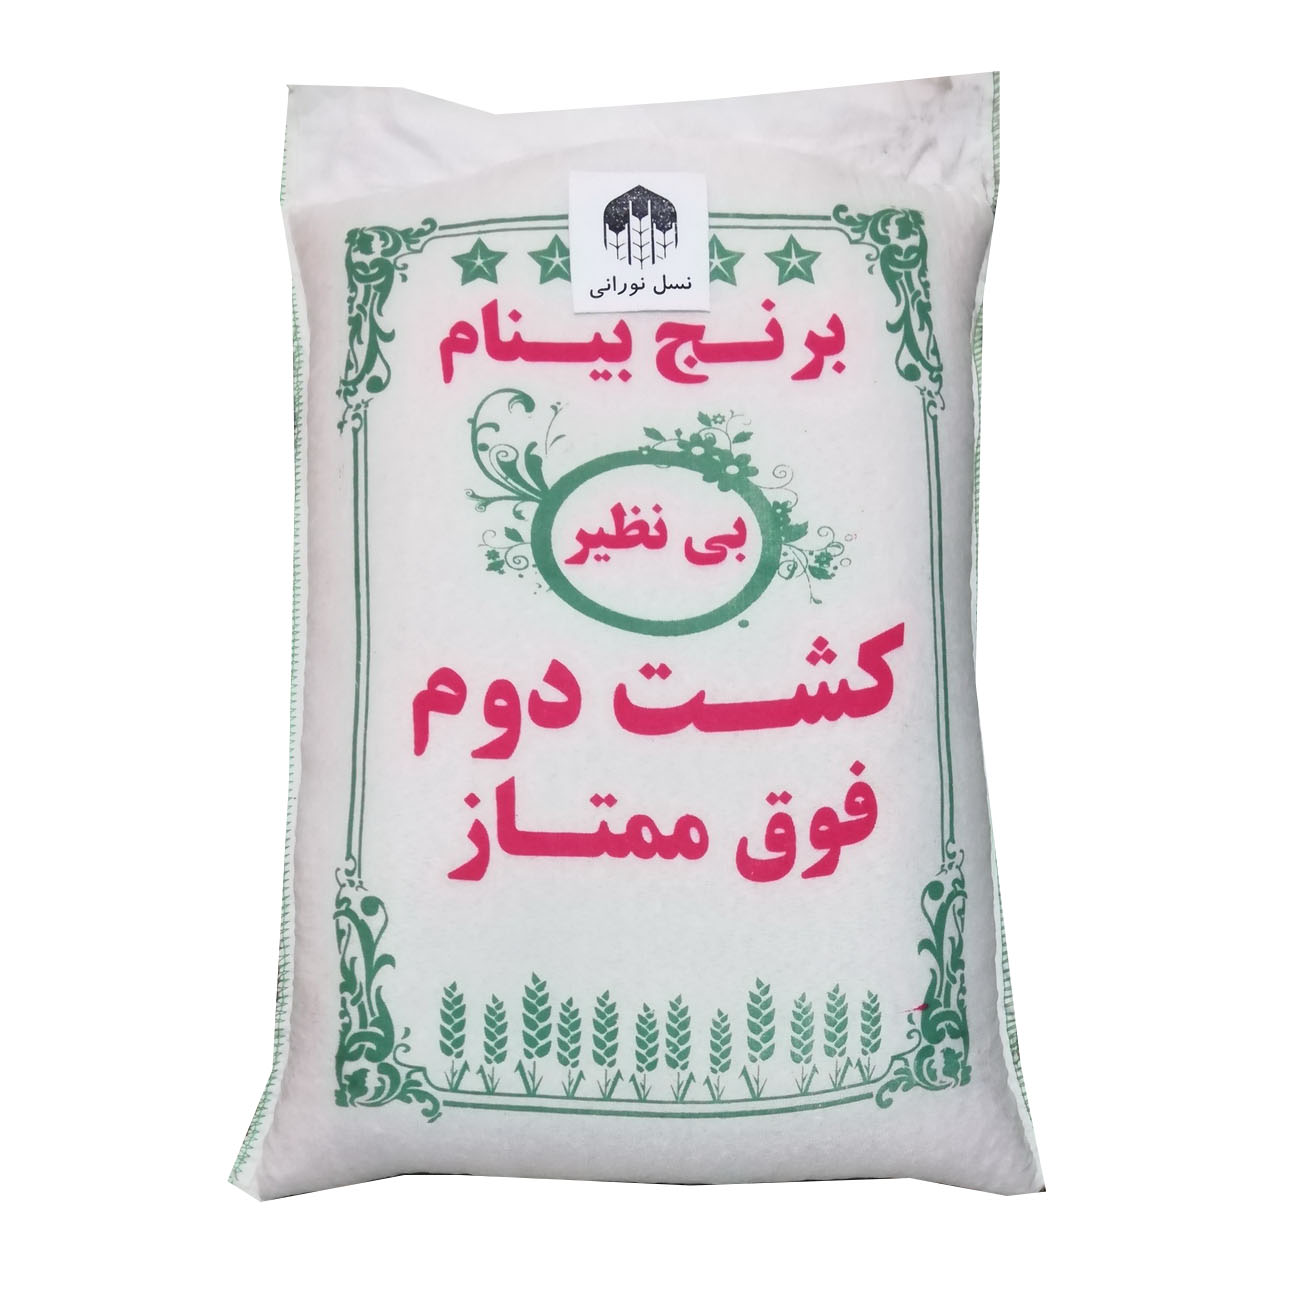 نکته خرید - قیمت روز برنج ایرانی صادراتی فوق ممتاز بینام - 10 کیلوگرم خرید